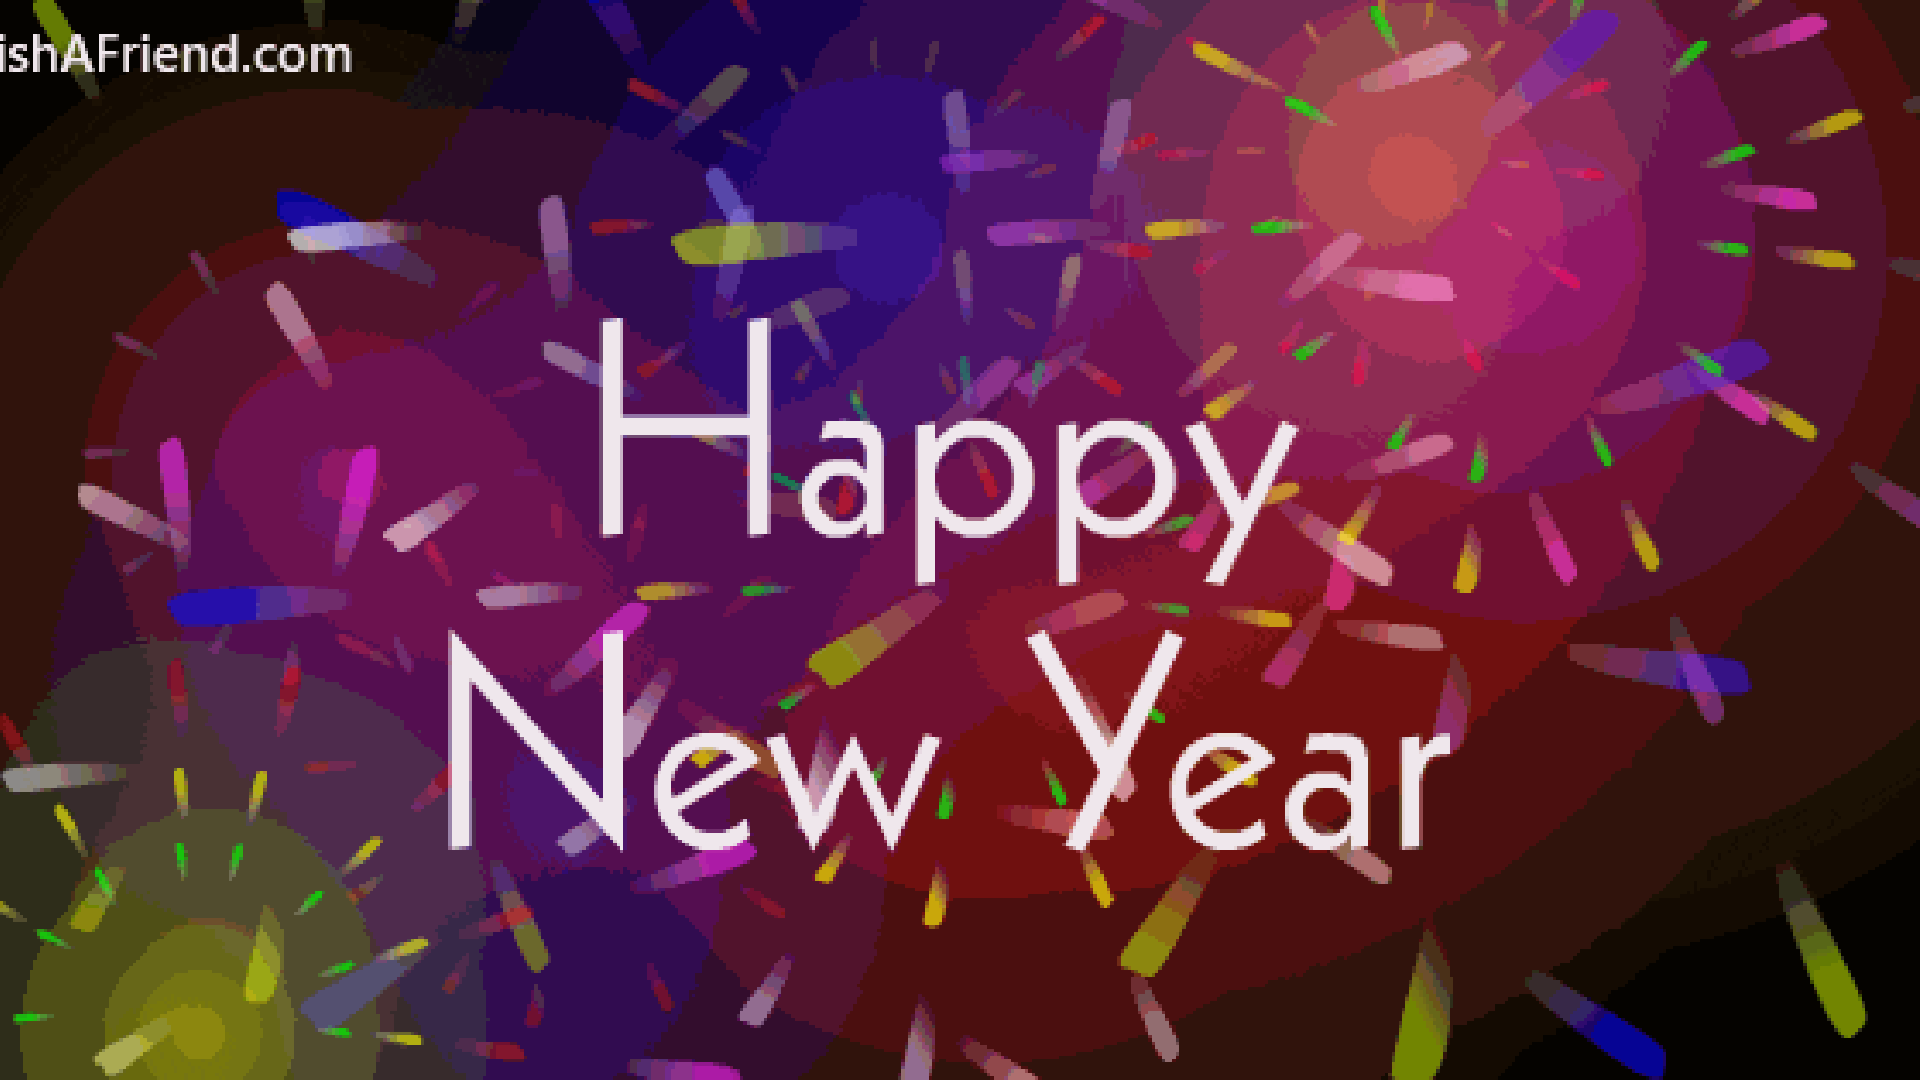 De beste wensen voor het nieuwe jaar!